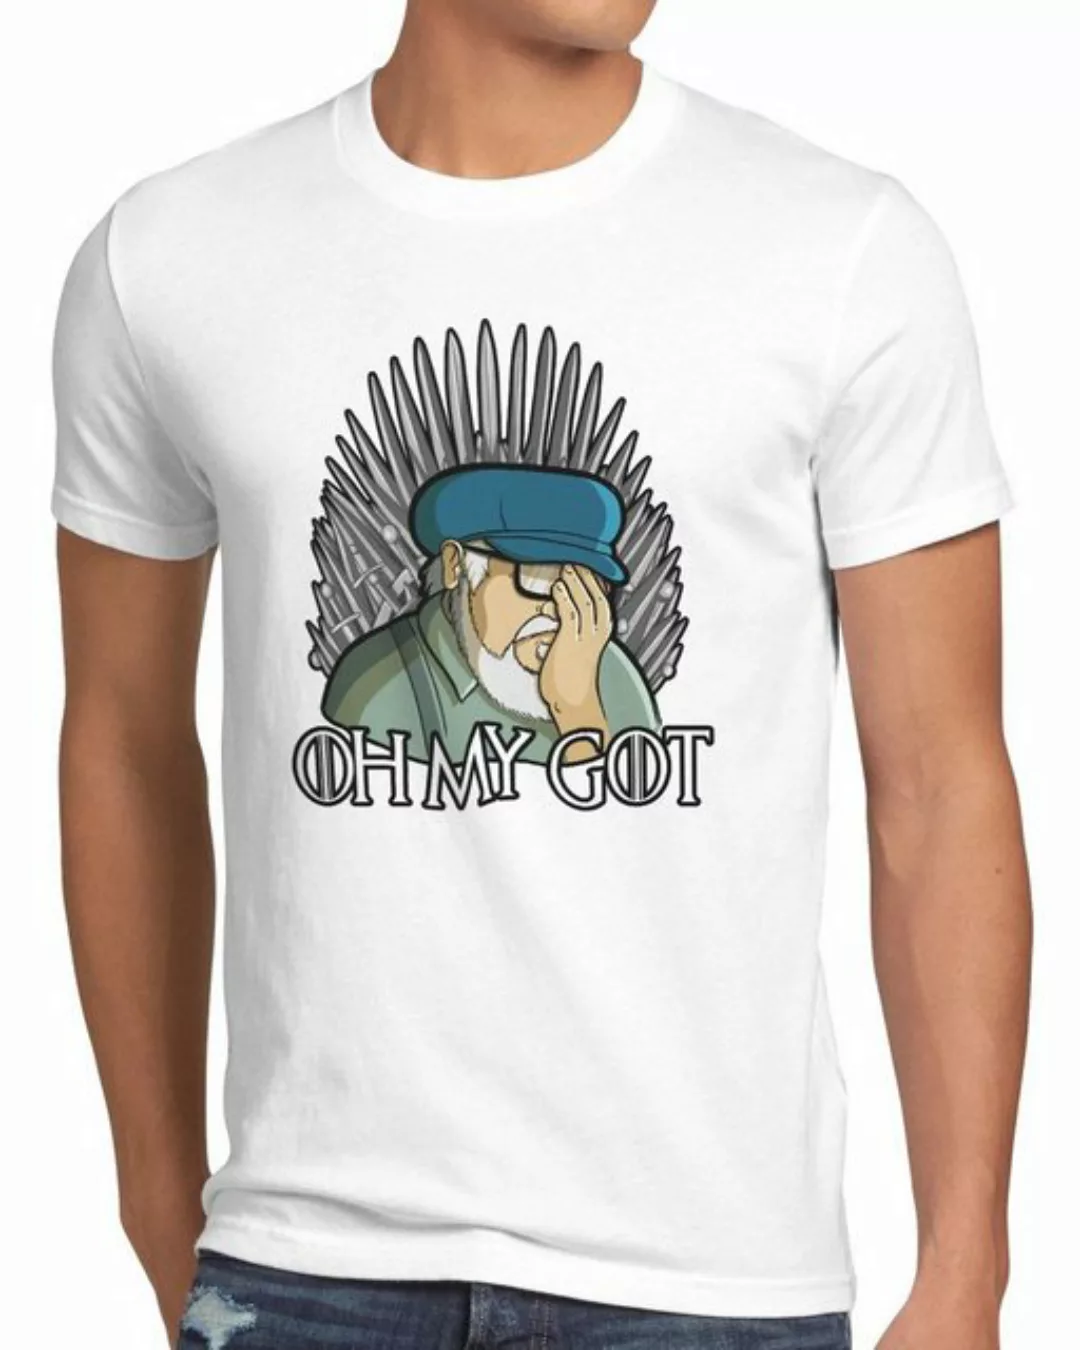 style3 Print-Shirt Herren T-Shirt Oh my GOT staffel8 lied von eis und feuer günstig online kaufen